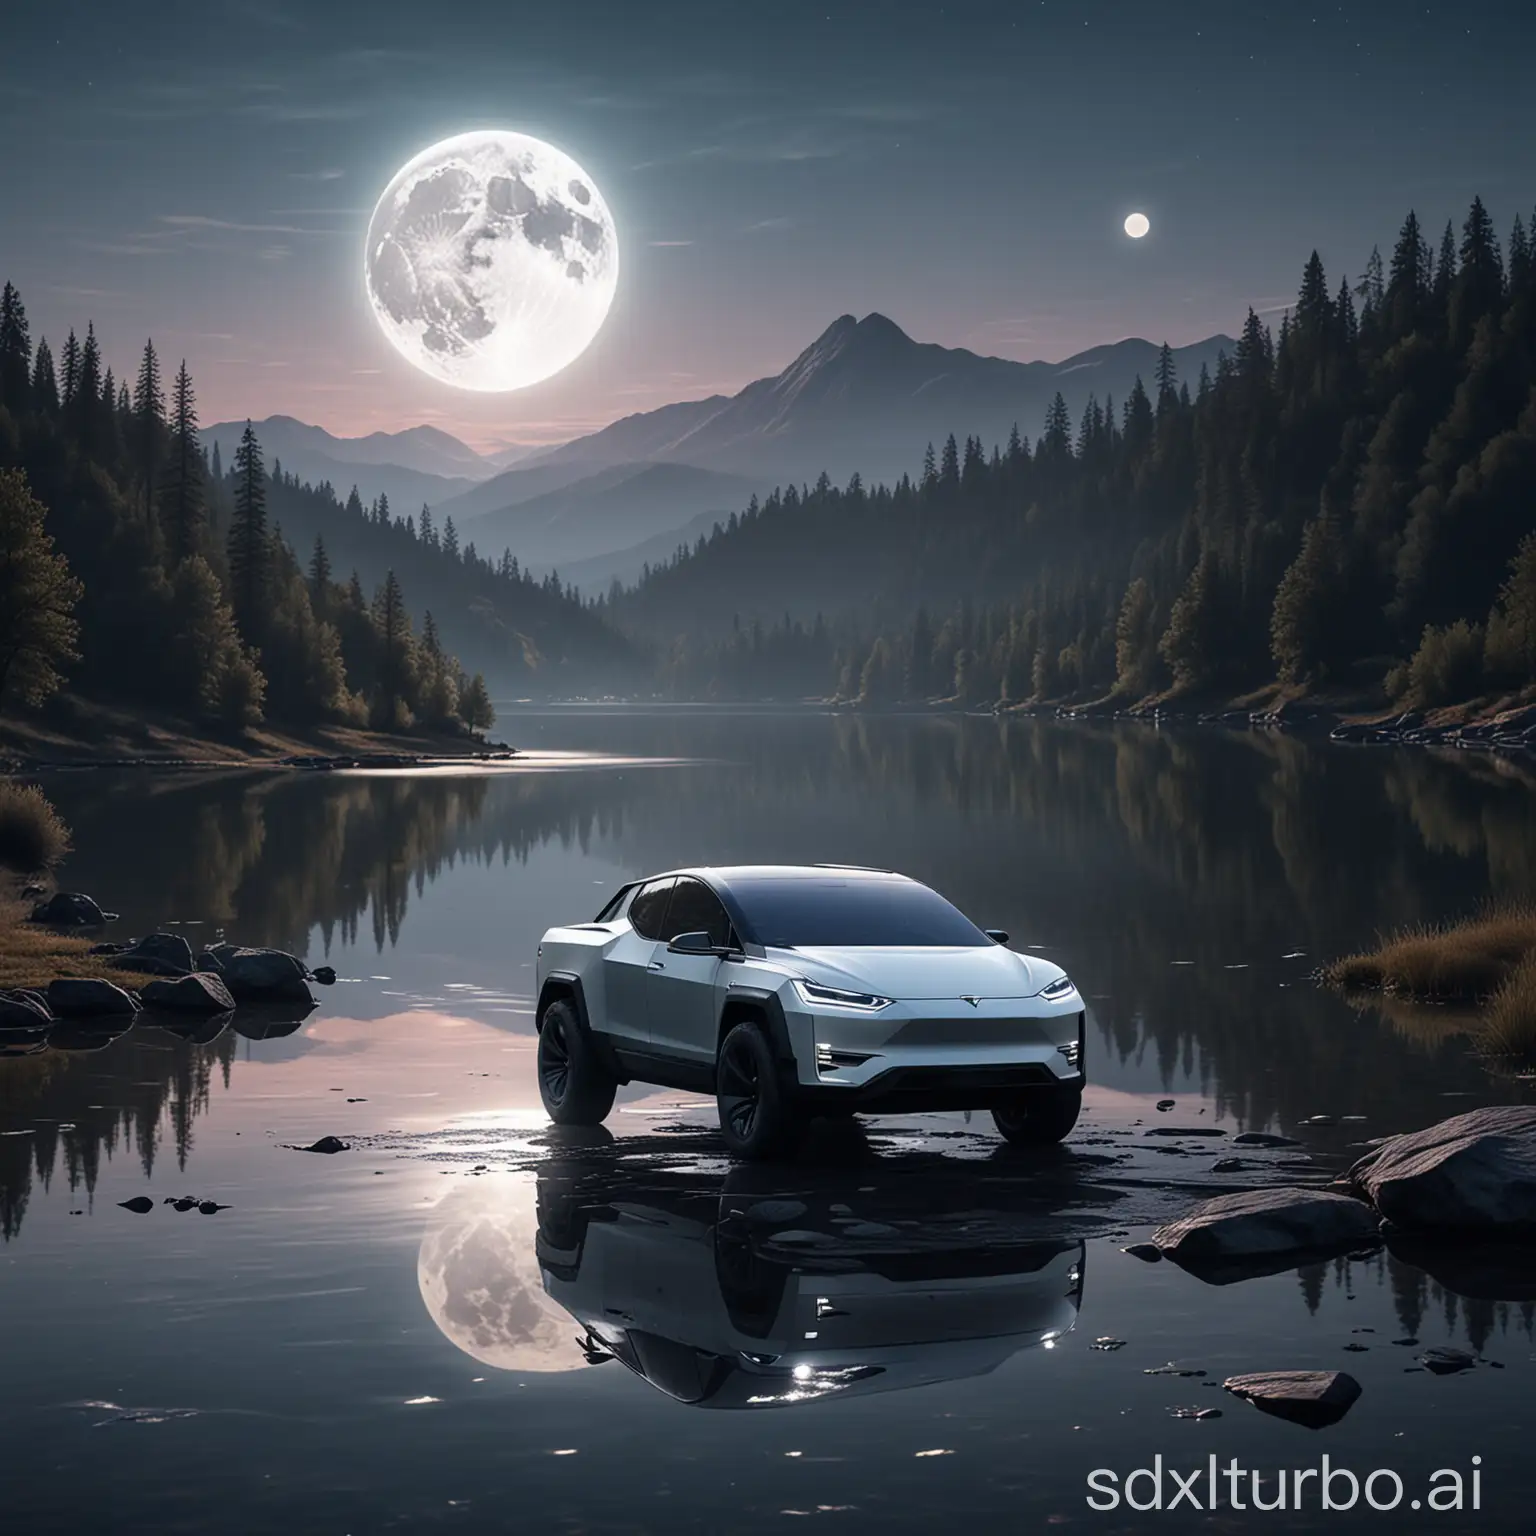 Hyperrealistic-Tesla-Cybertruck-by-a-Beautiful-Moonlit-Lake